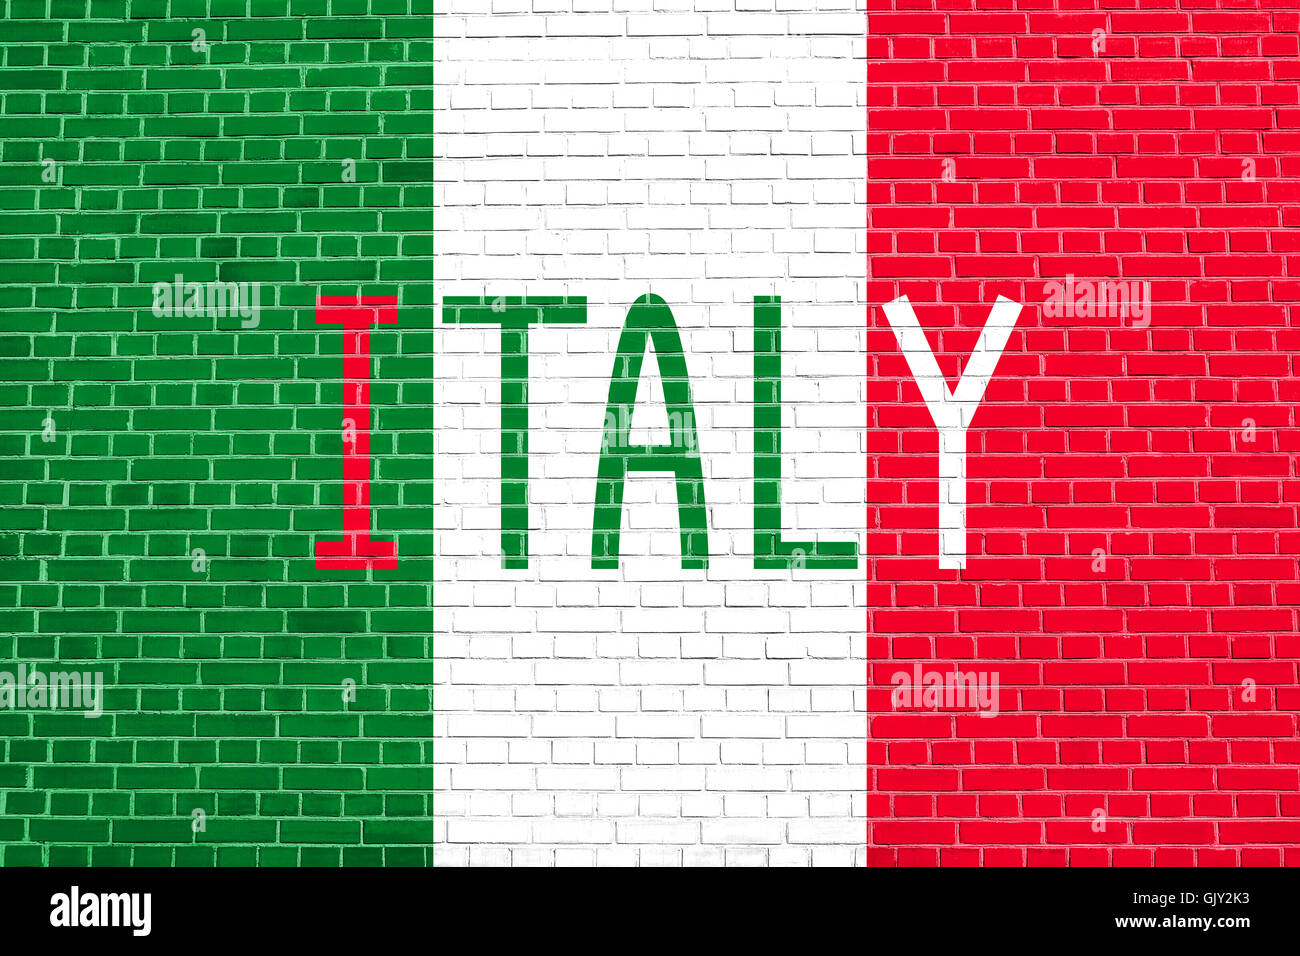 Pavillon de l'Italie sur mur de brique texture background. Drapeau national italien. Mot de l'Italie. Banque D'Images